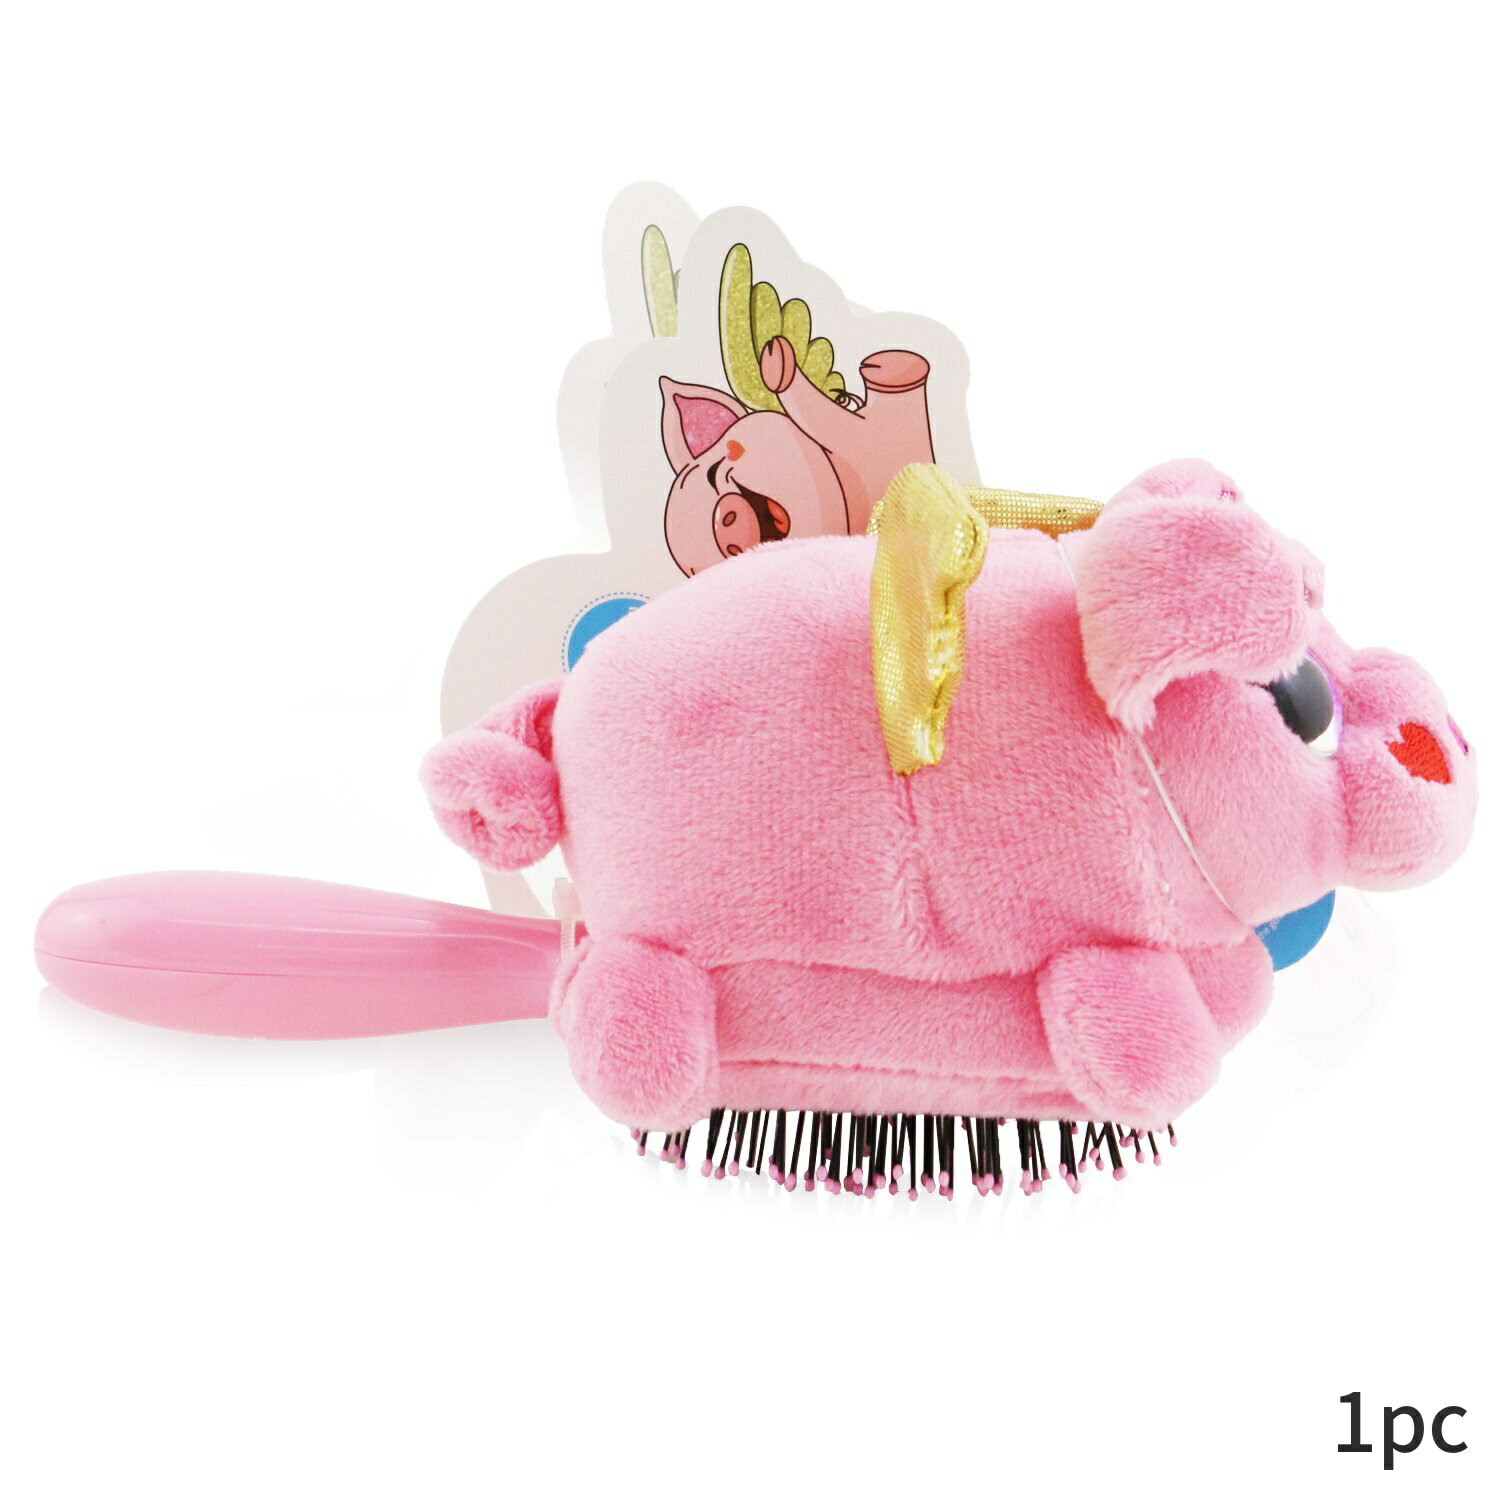 ウェットブラシ ヘアブラシ Wet Brush くし Plush - # Flying Pig 1pc ヘアケア アクセサリー 母の日 ..